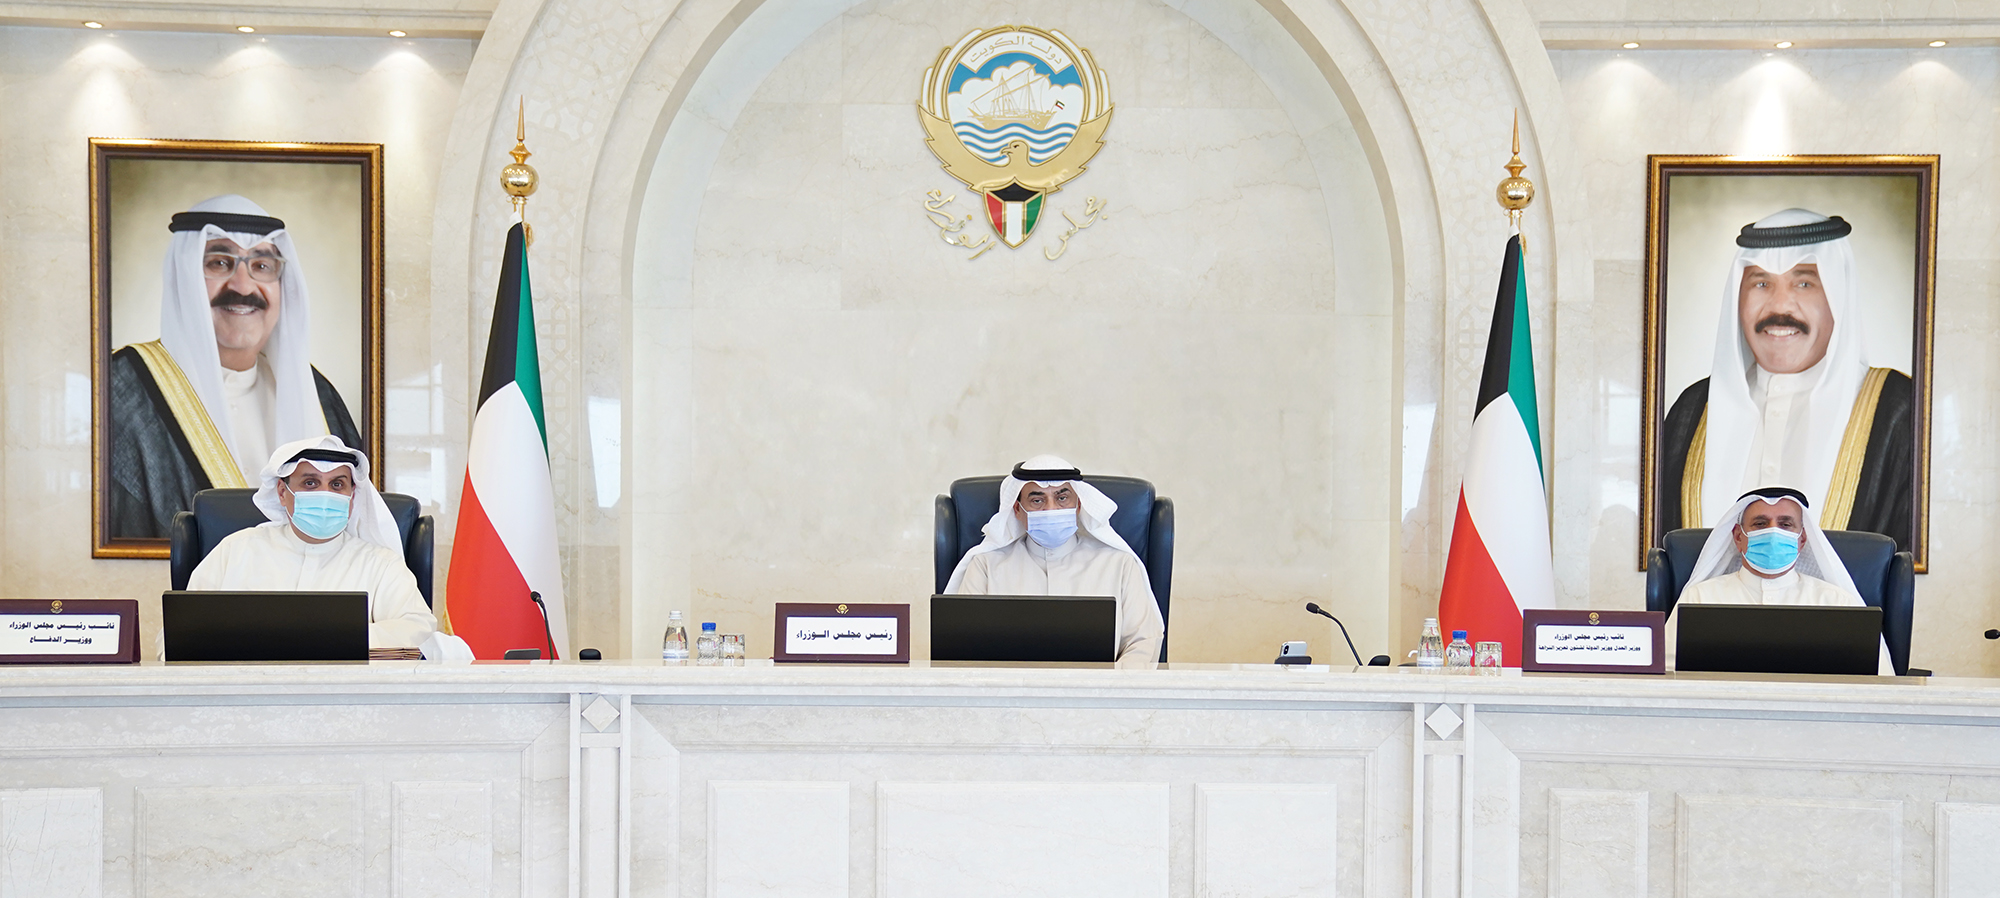 The Kuwaiti cabinet